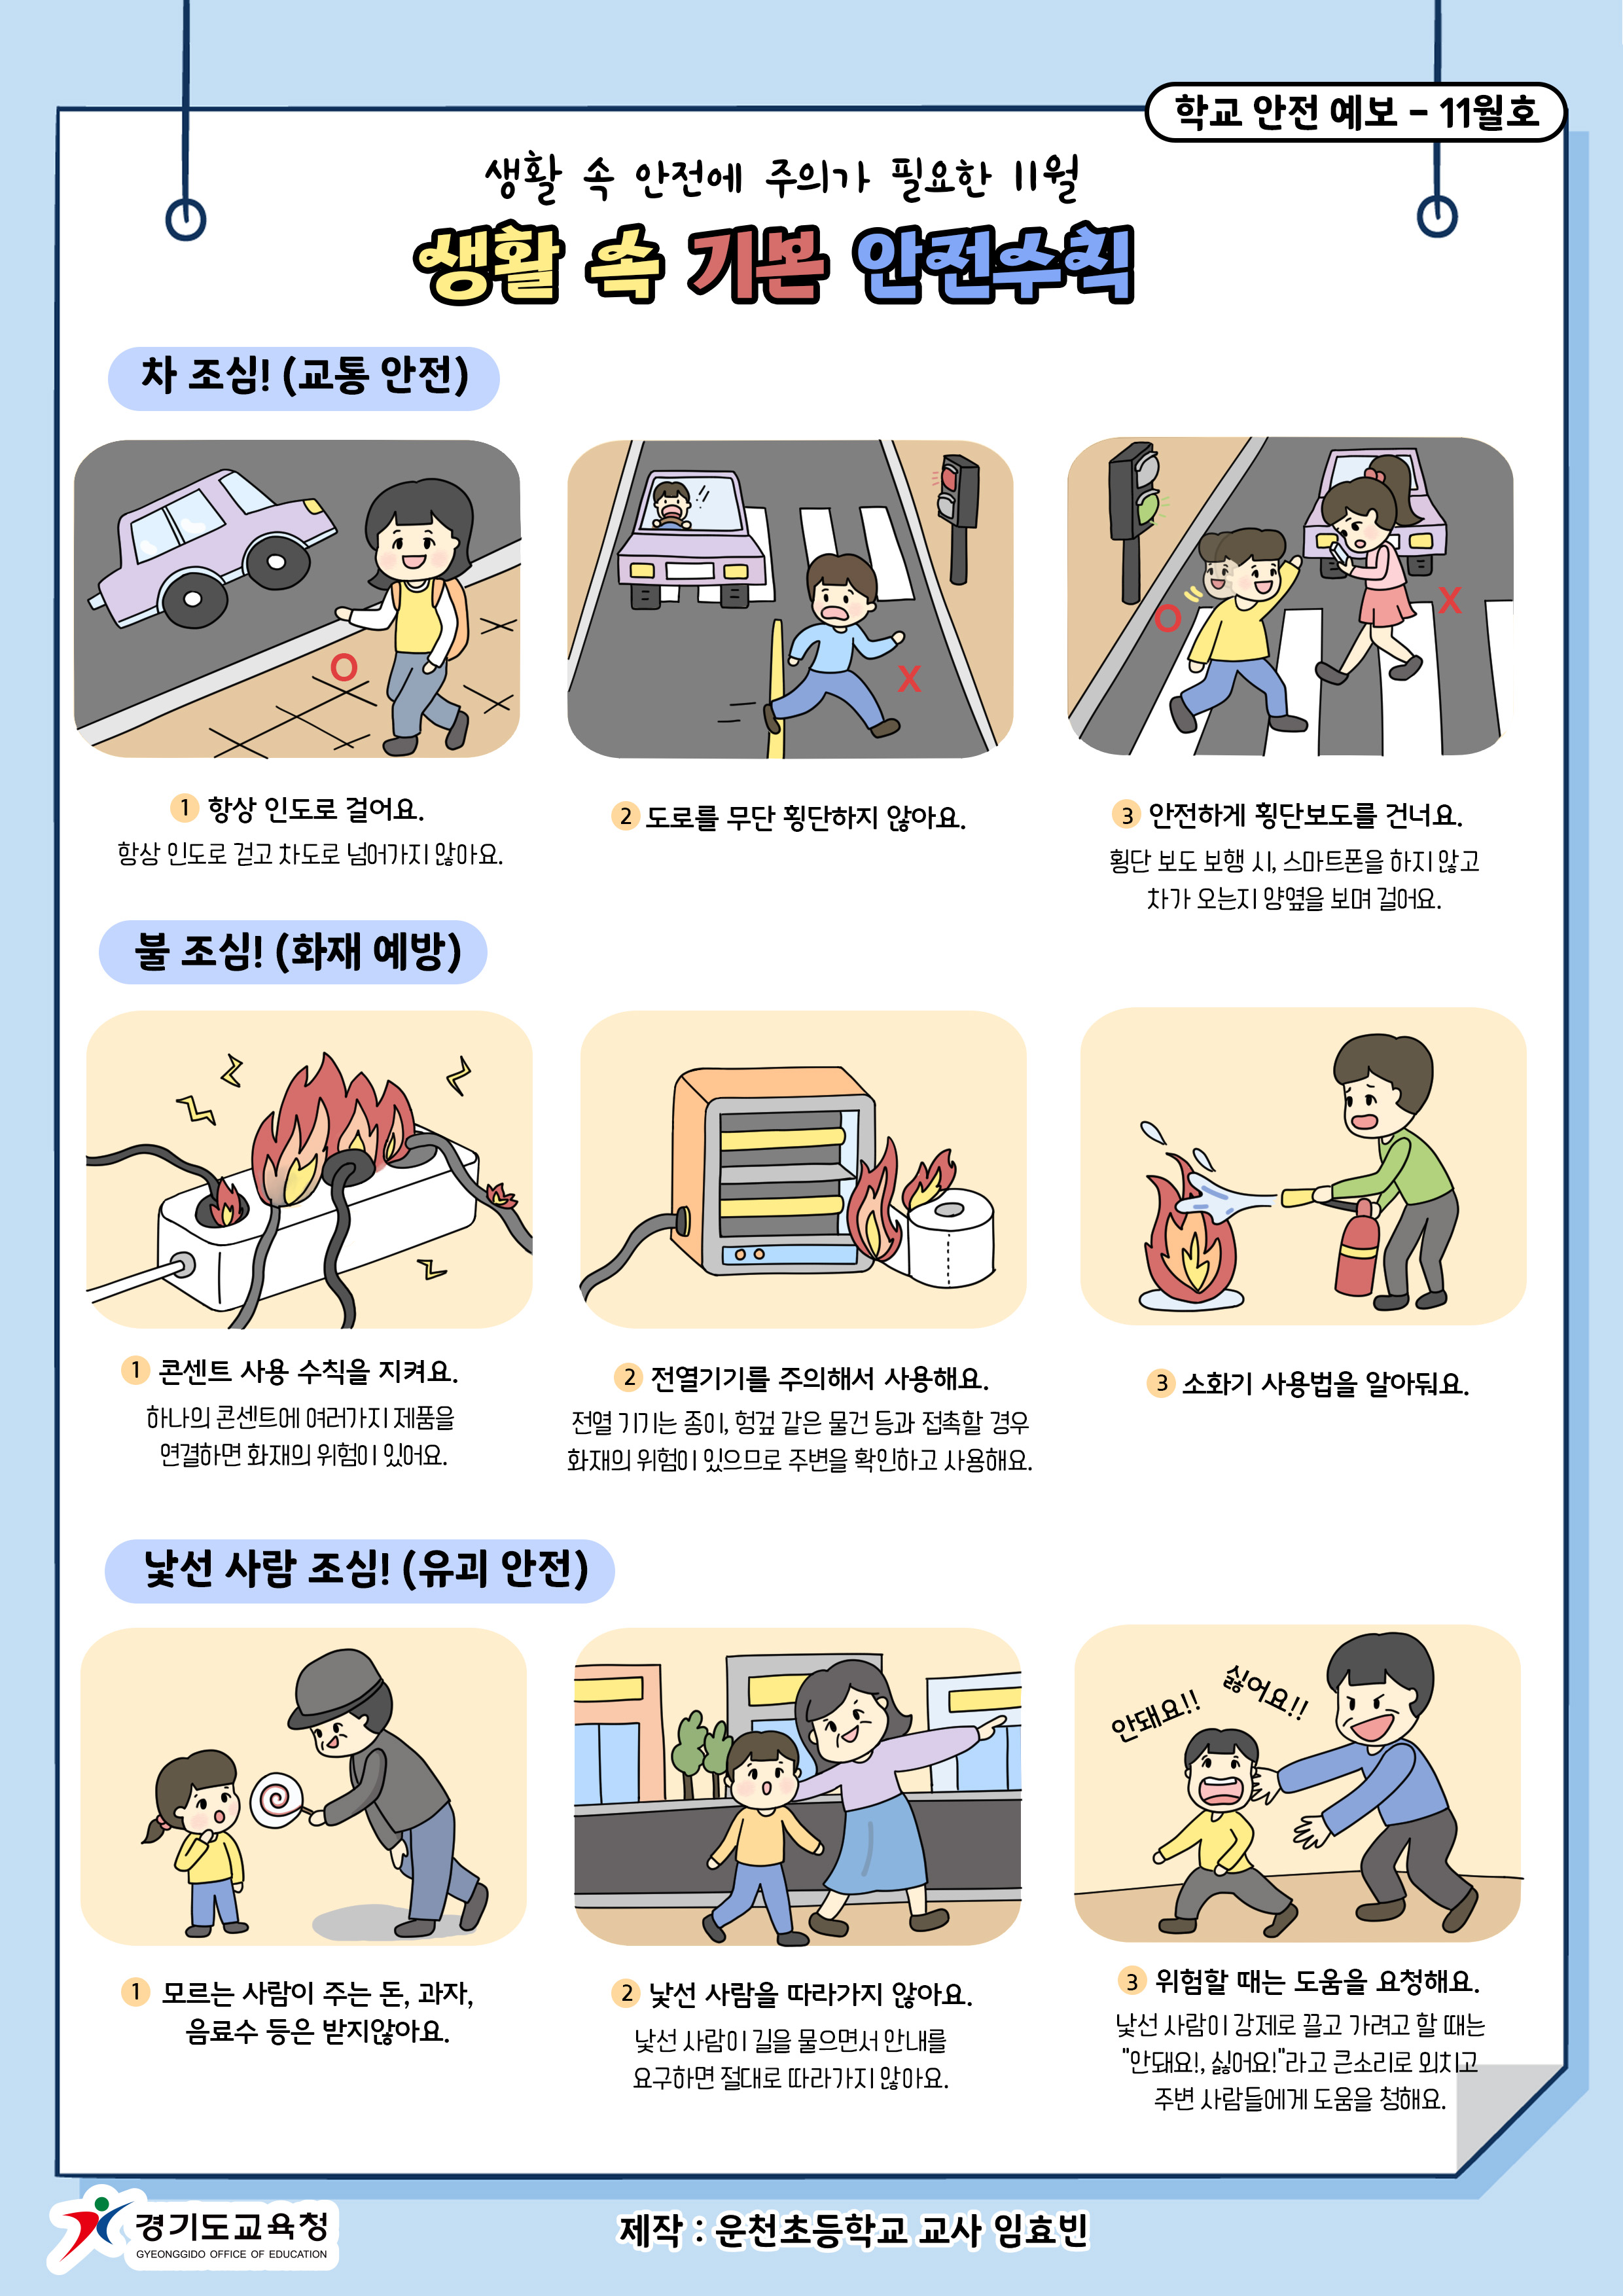 [11월] 학교안전사고 예보-생활 속 기본 안전수칙